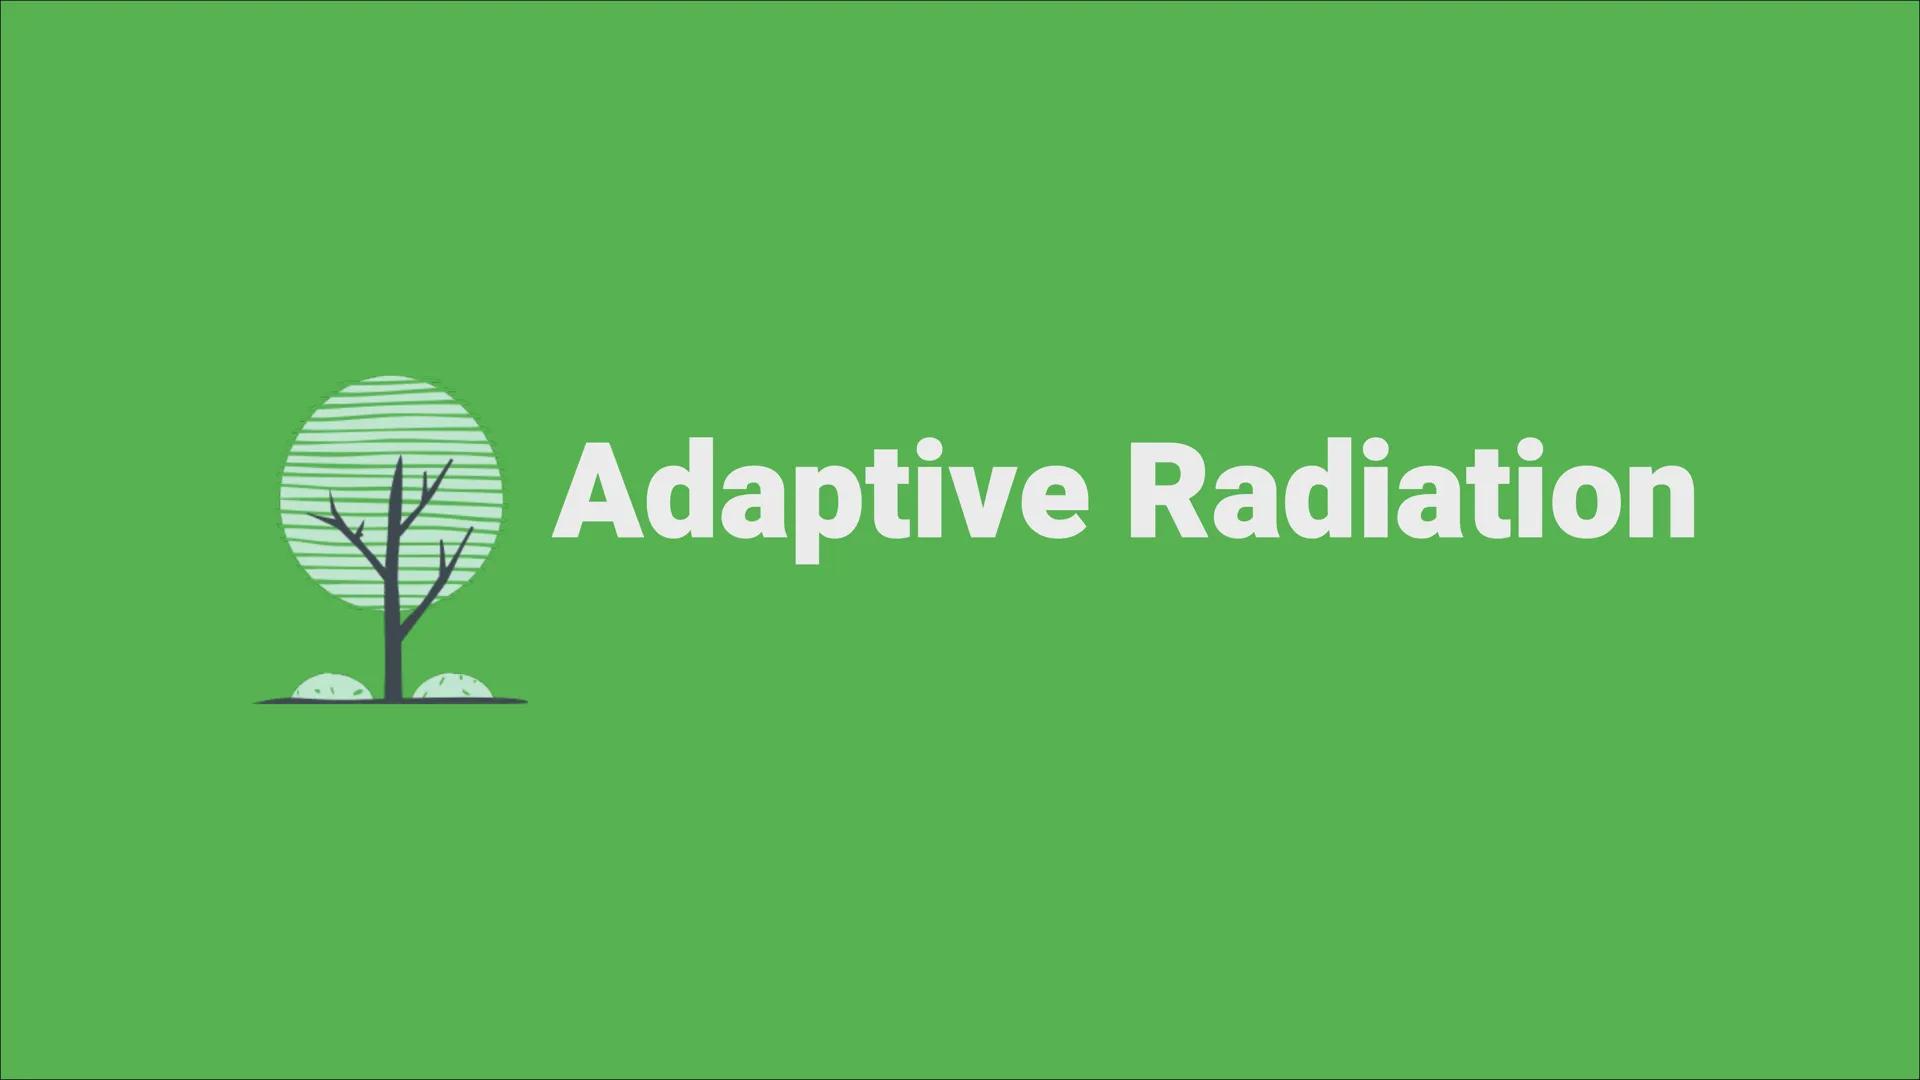 Adaptive Radiation ●
●
Inhaltsverzeichnis
Definition
Wie läuft die Adaptive Radiation ab?
Beispiel: Darwin Finken
Quellen Definition
Adaptio